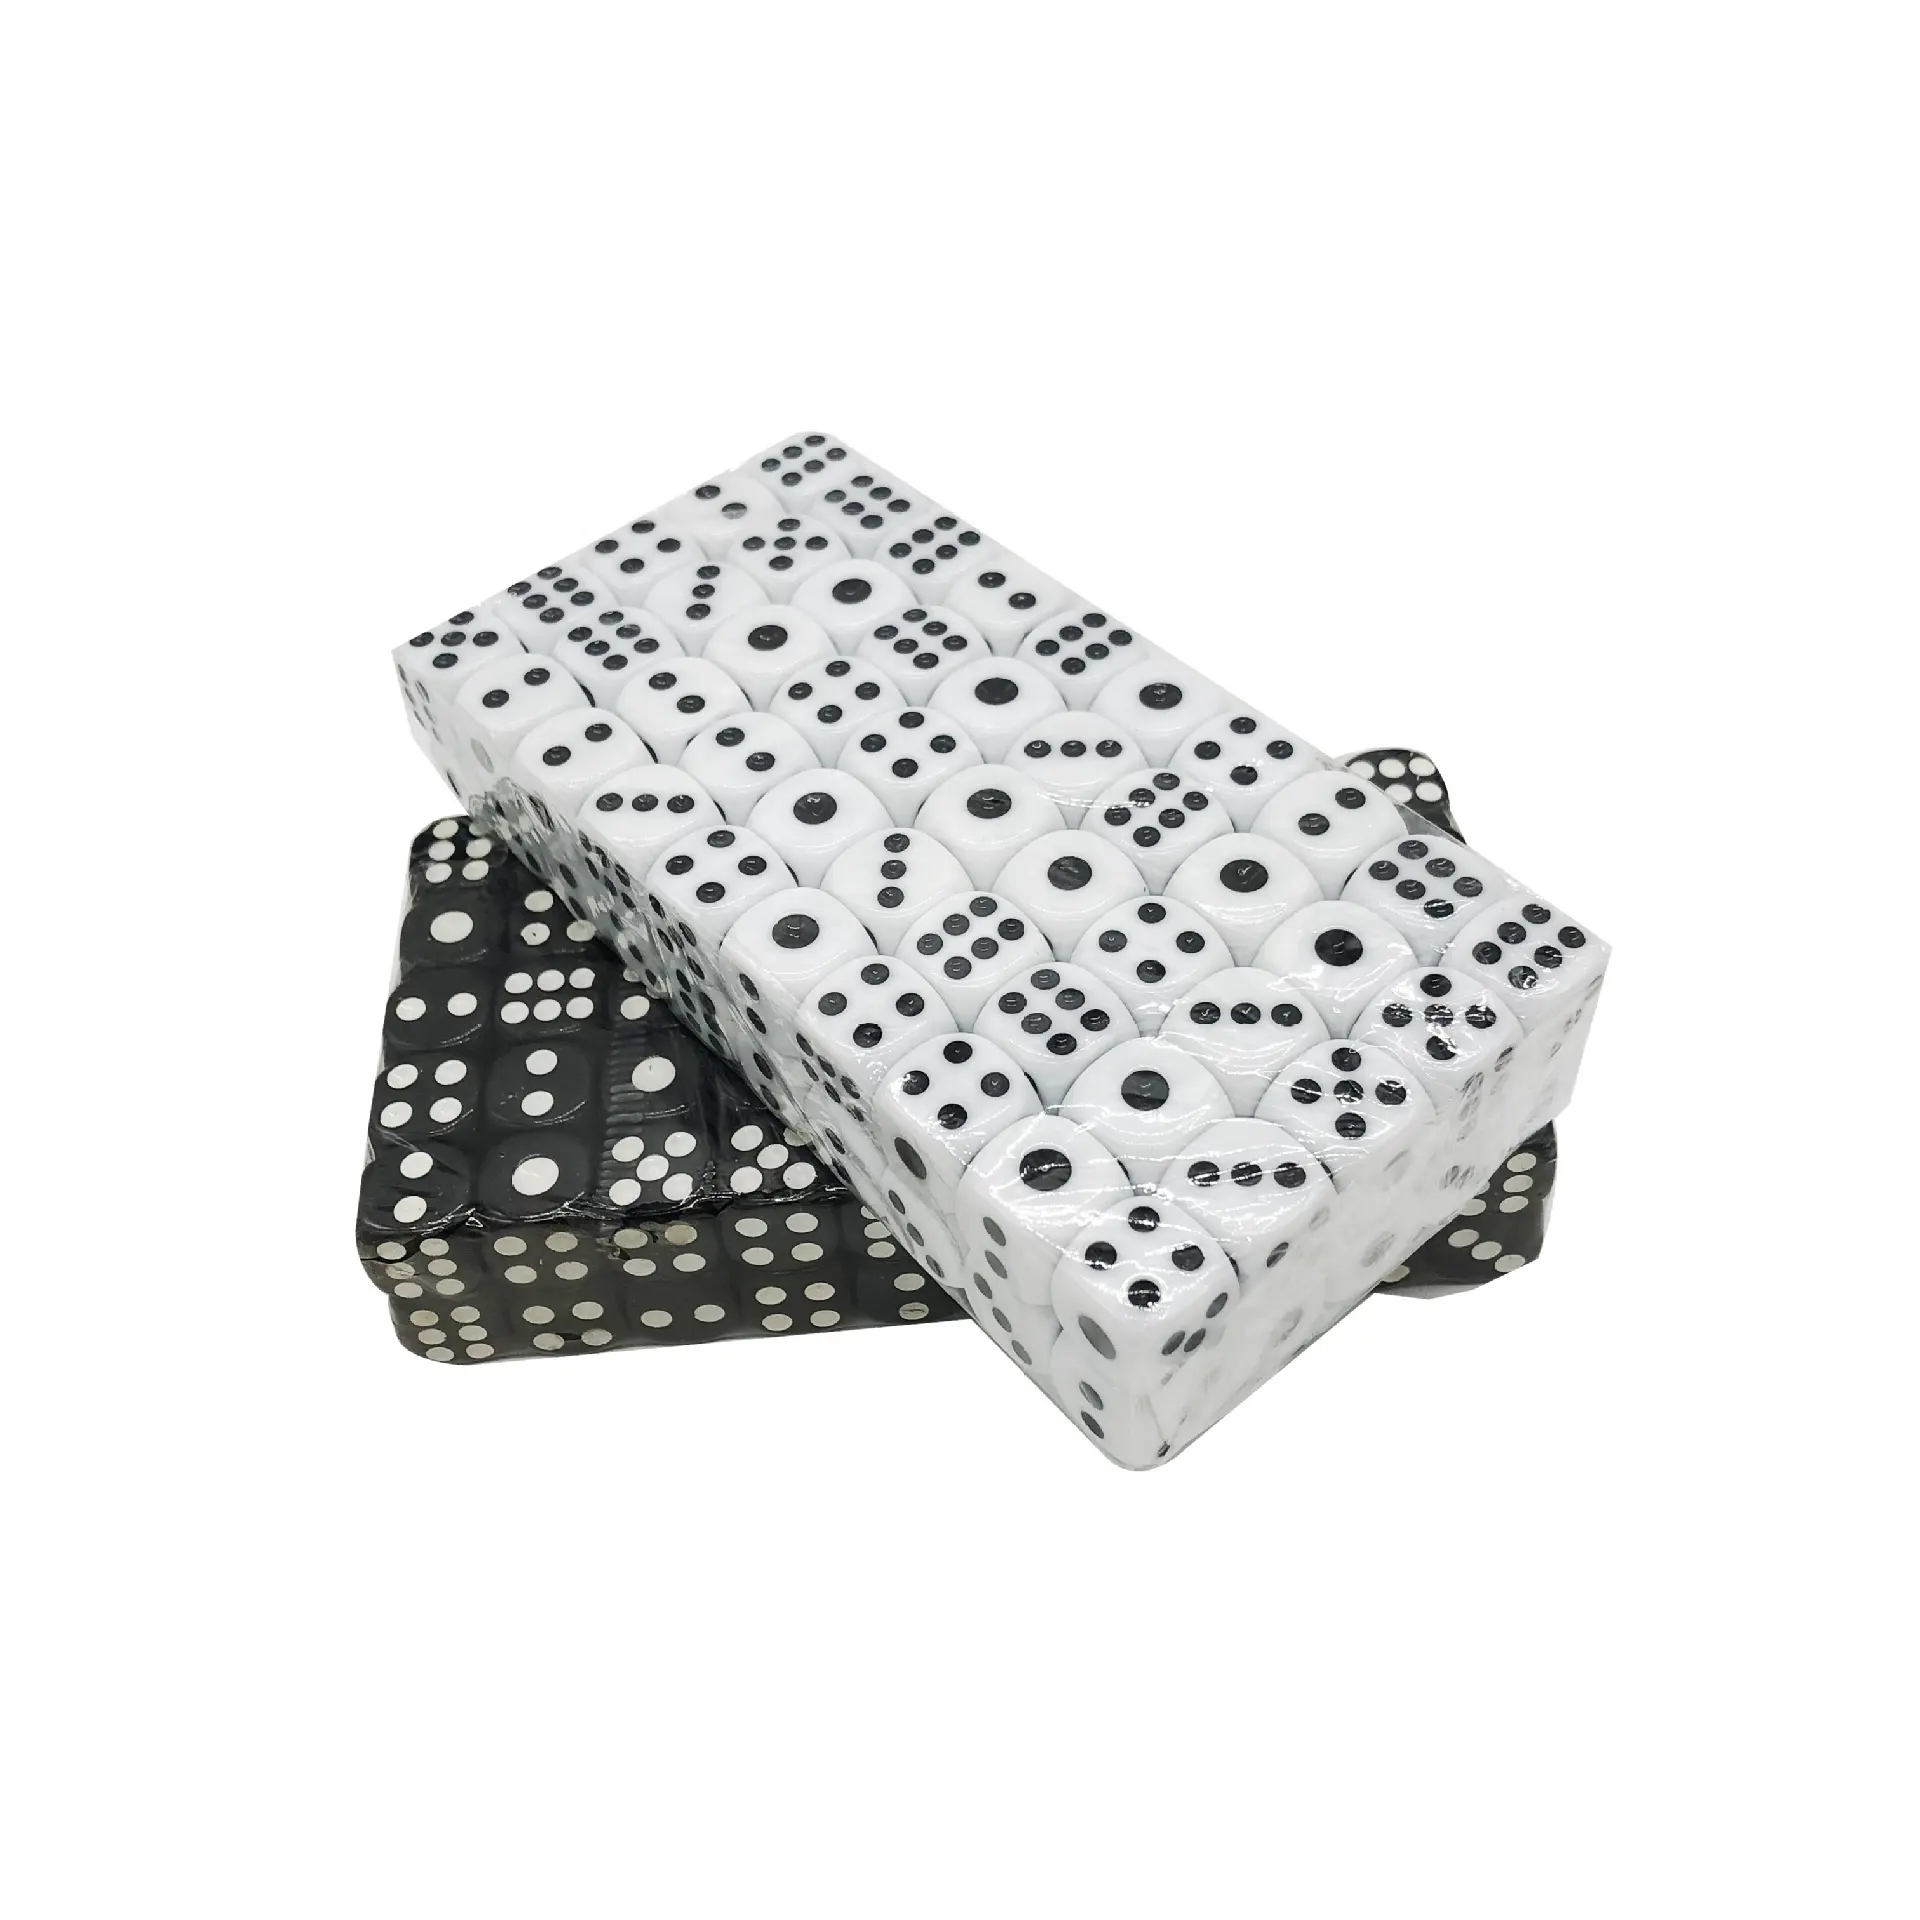 Mini dados de juego de casino poliédricos, duraderos, anticaída, taza con dados acrílicos, blanco y negro, 14mm, 100 Uds.